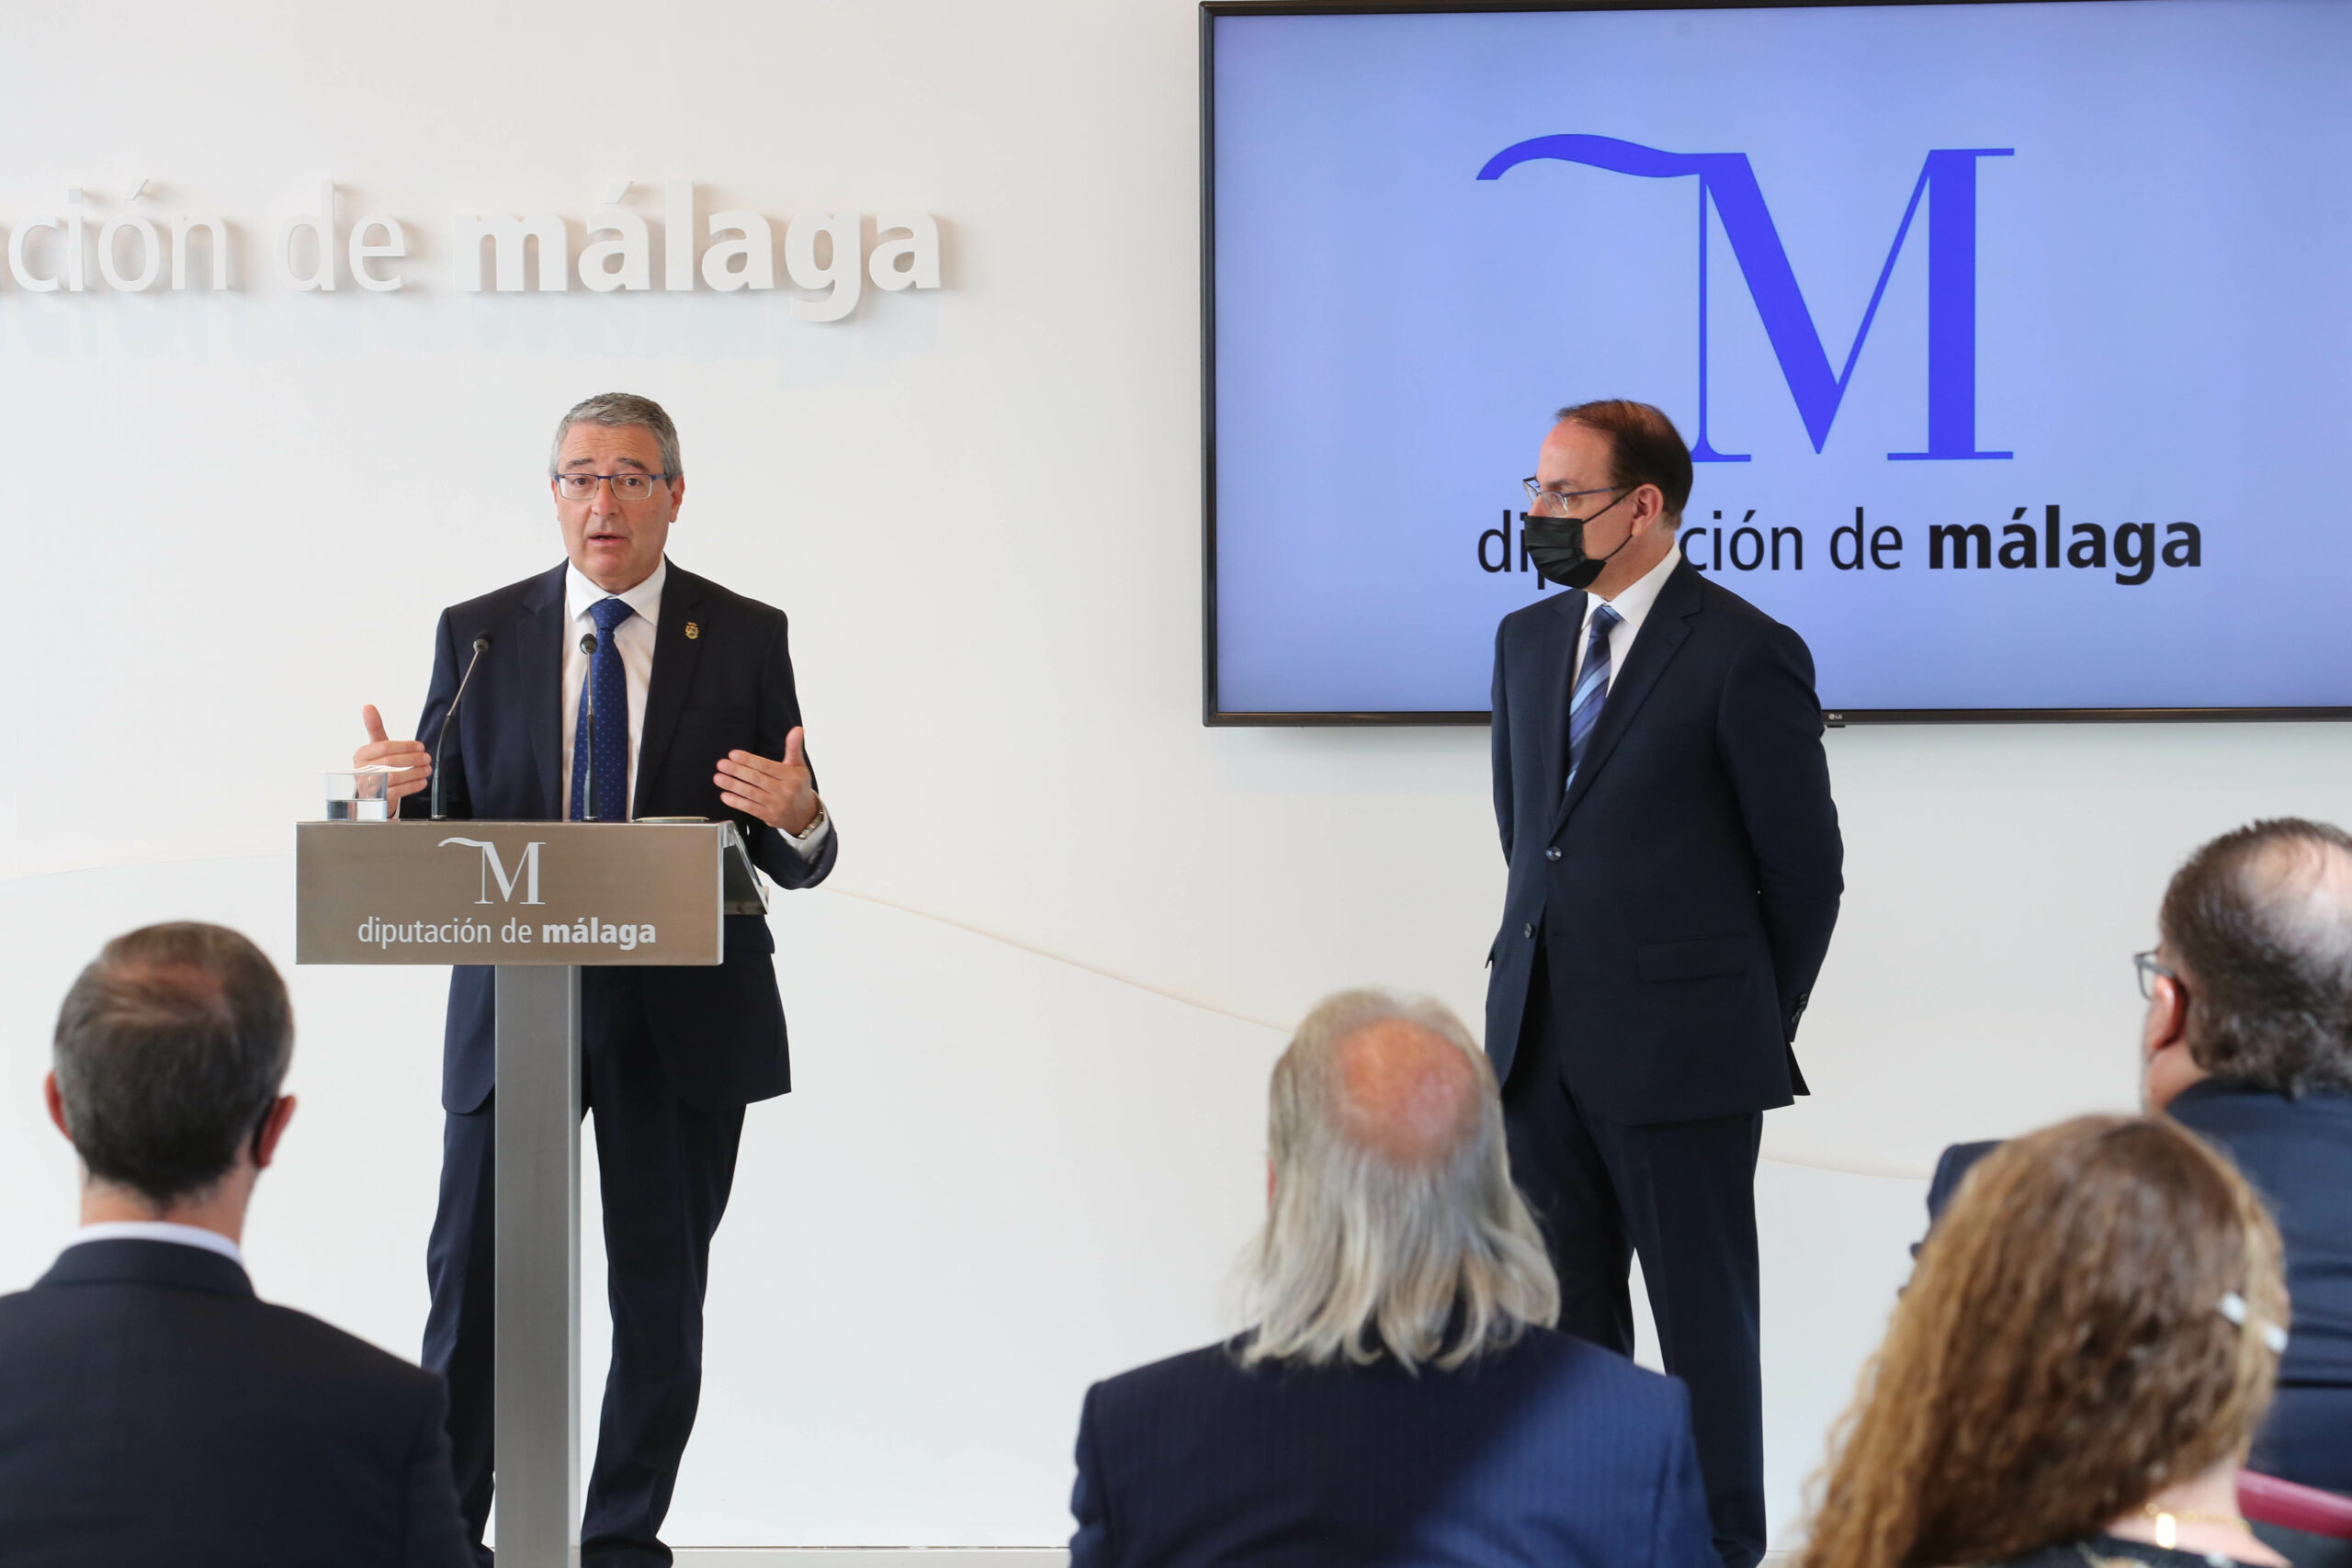 Salado destaca la apuesta la Diputación por una gran alianza público-privada para el desarrollo de grandes proyectos, el progreso y la creación de empleo en la provincia